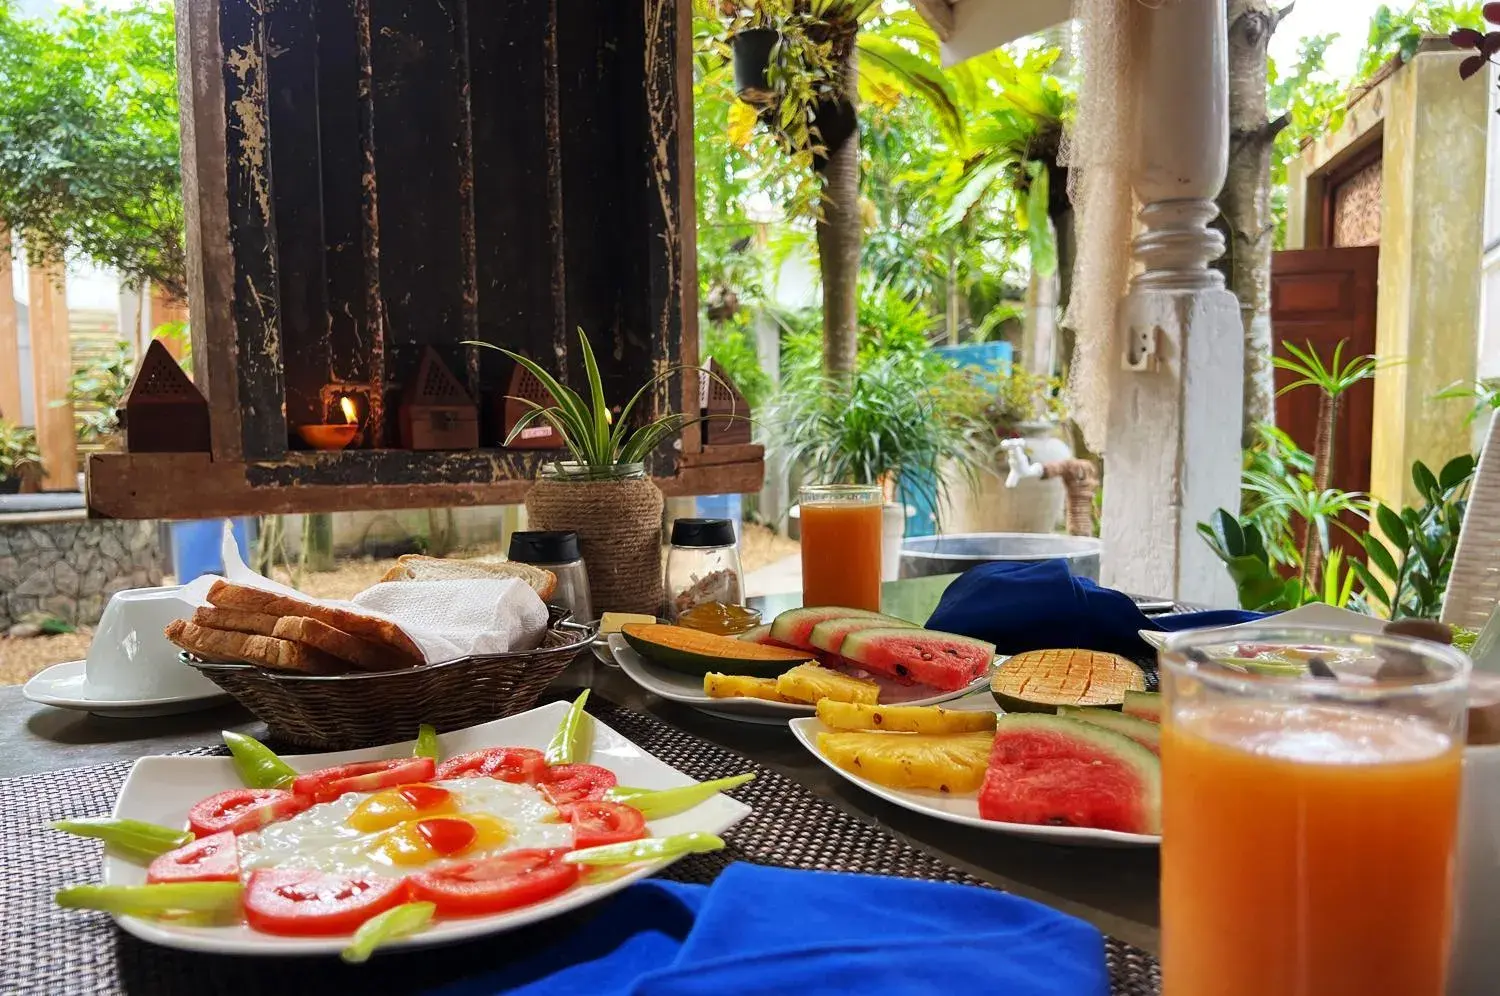 Breakfast in Gomez Place